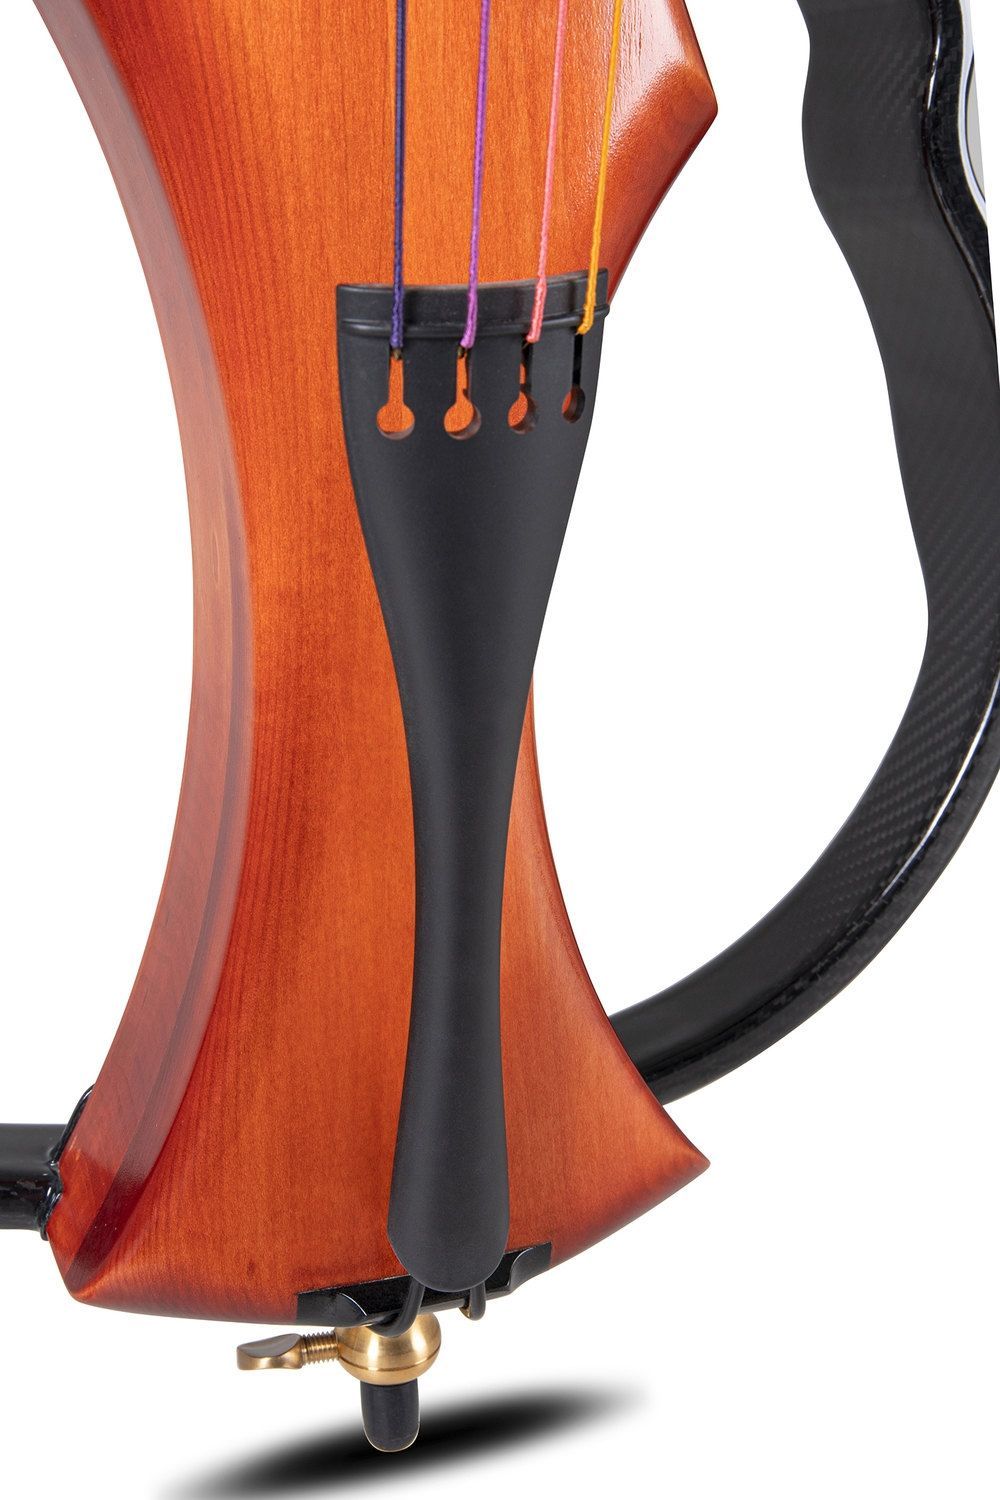 GEWA E-Cello NOVITA 3.0 Farbe goldbraun